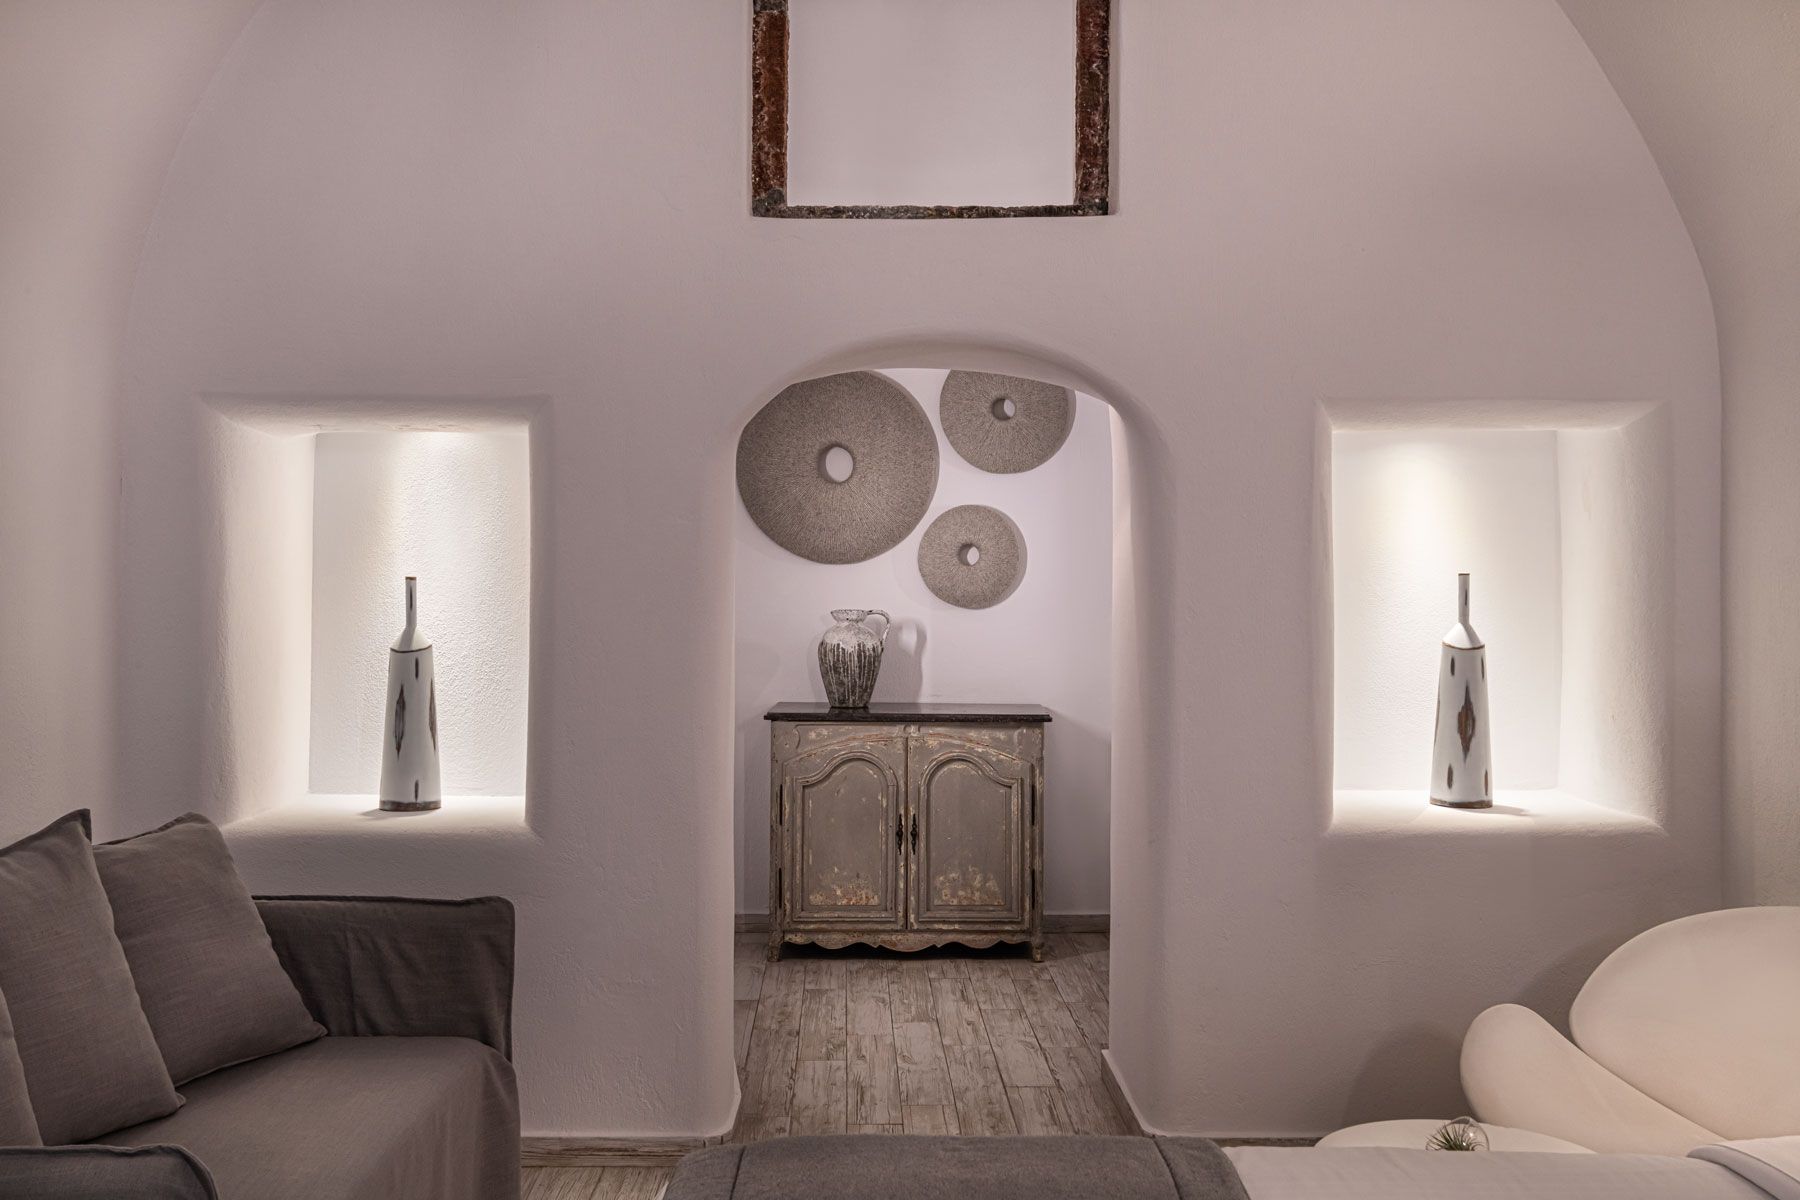 Aqua luxury suites in Santorini imerovigli, Interior design of luxury suites with private pool